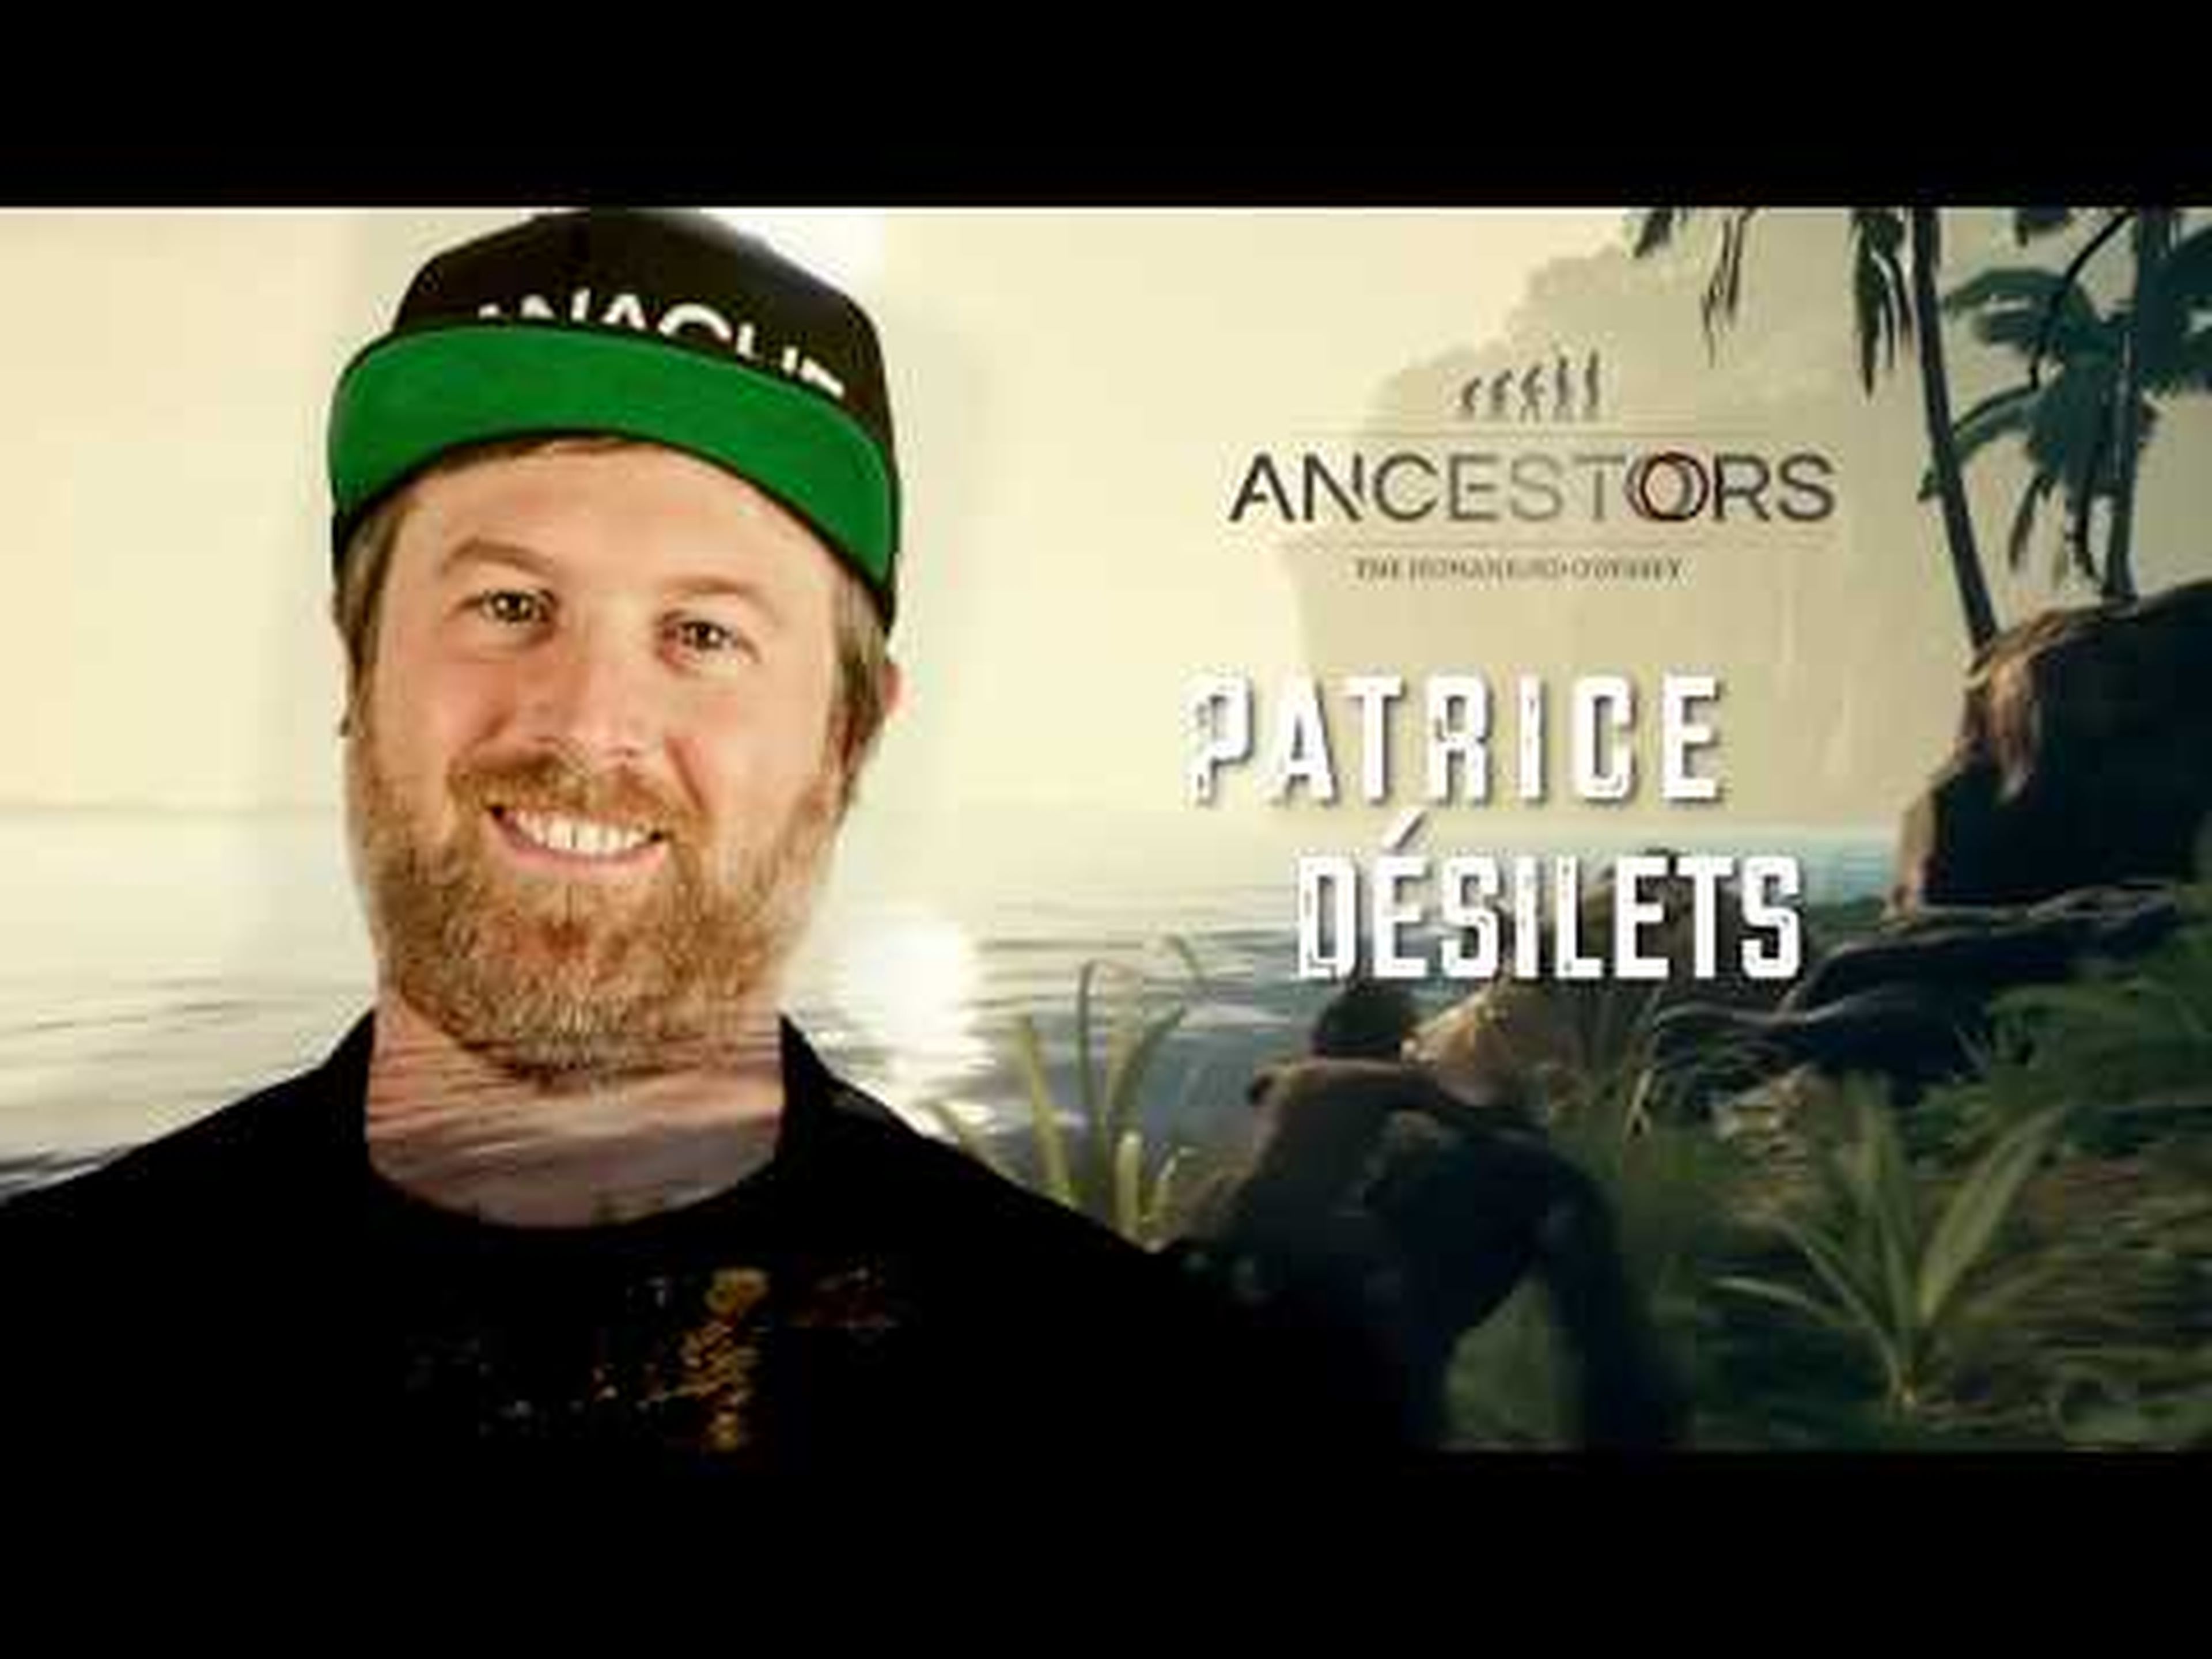 Acción Especial Ancestors Video 2: Conoce a su creador, Patrice Desilets